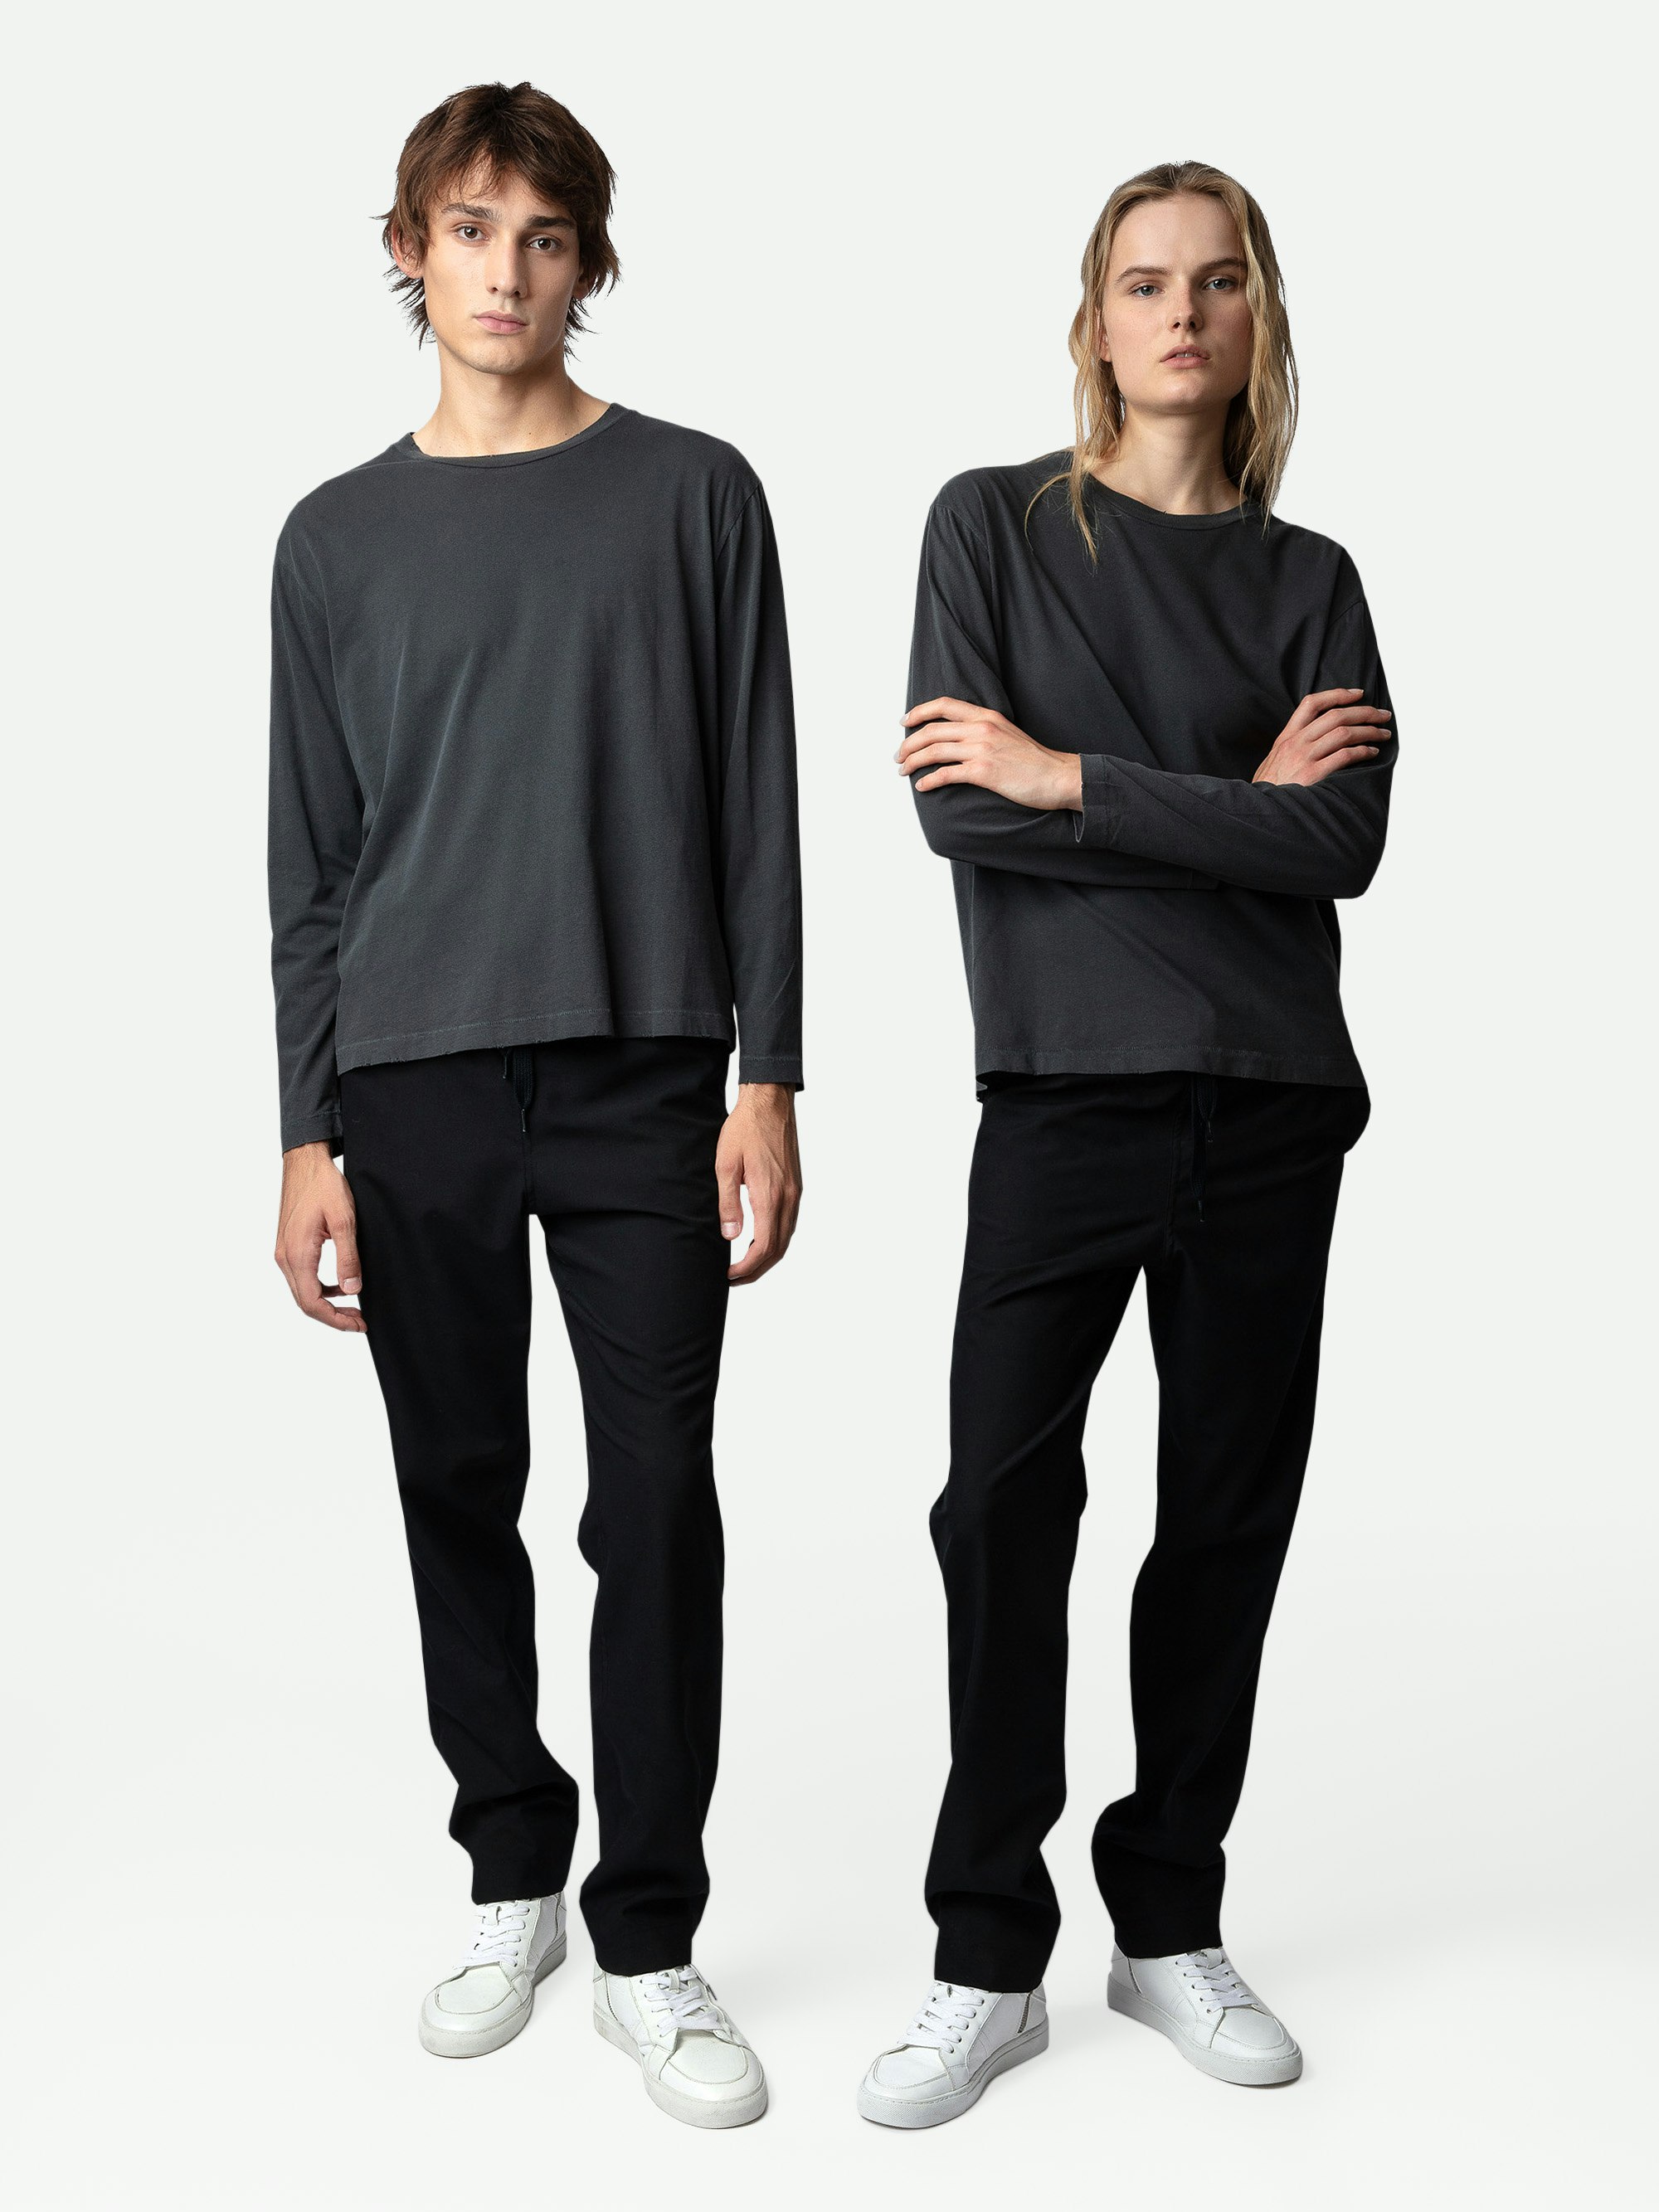 Camiseta Ellon - Camiseta unisex de algodón en gris oscuro de manga larga con insignia de blasón del estudio en la espalda.